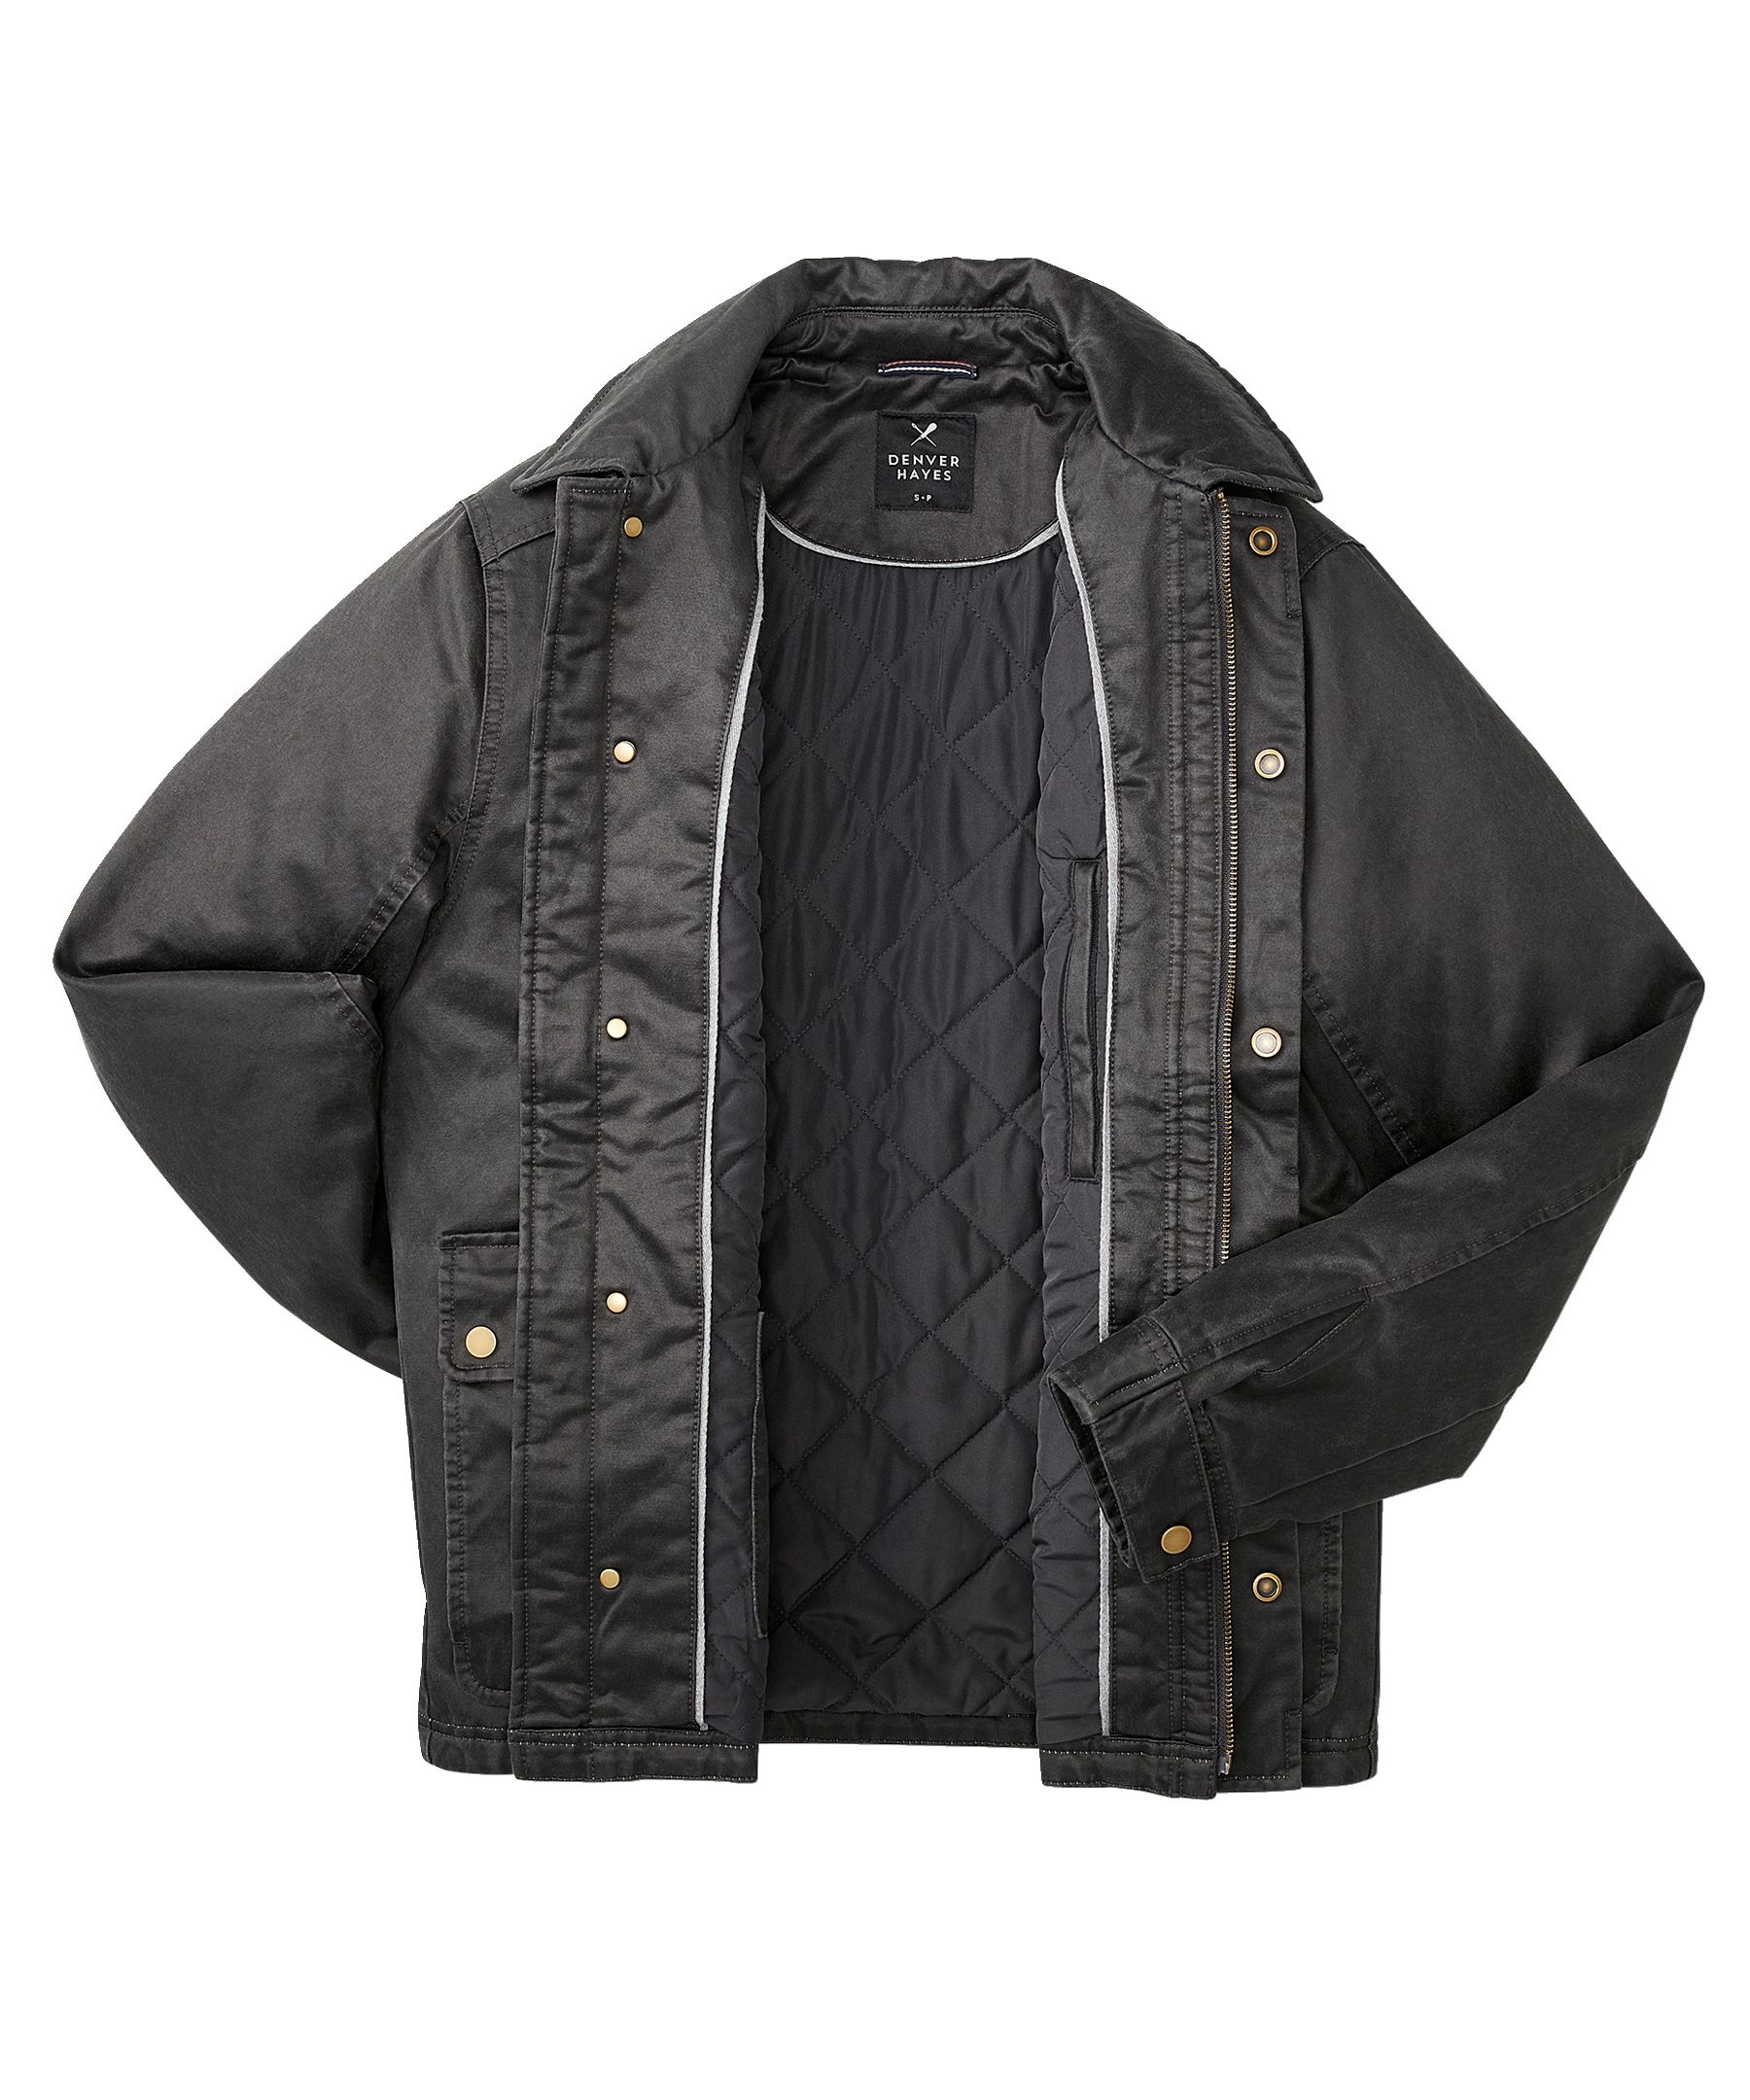 Denver Hayes, Jackets & Coats